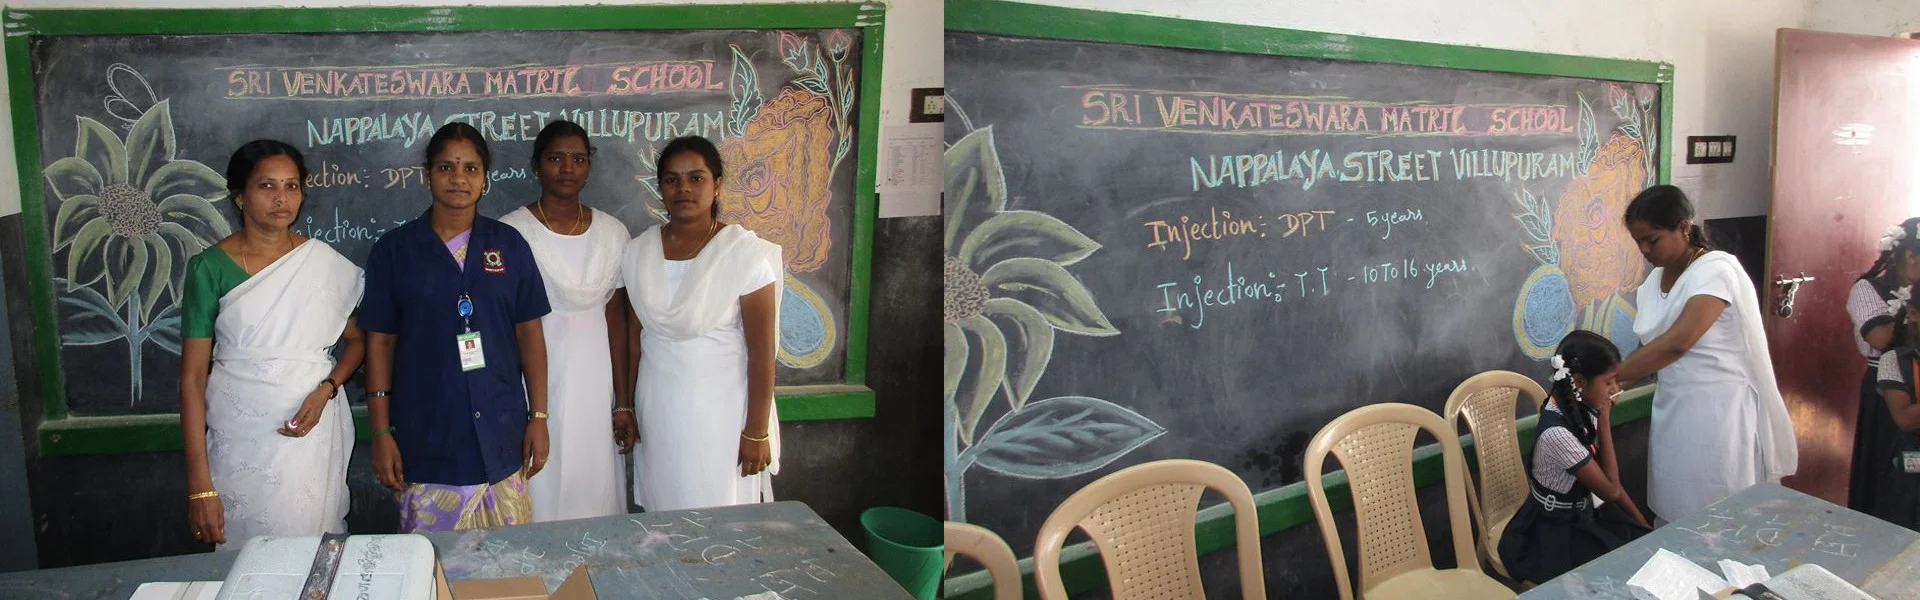 Sri Venkateswara School in Villupuram